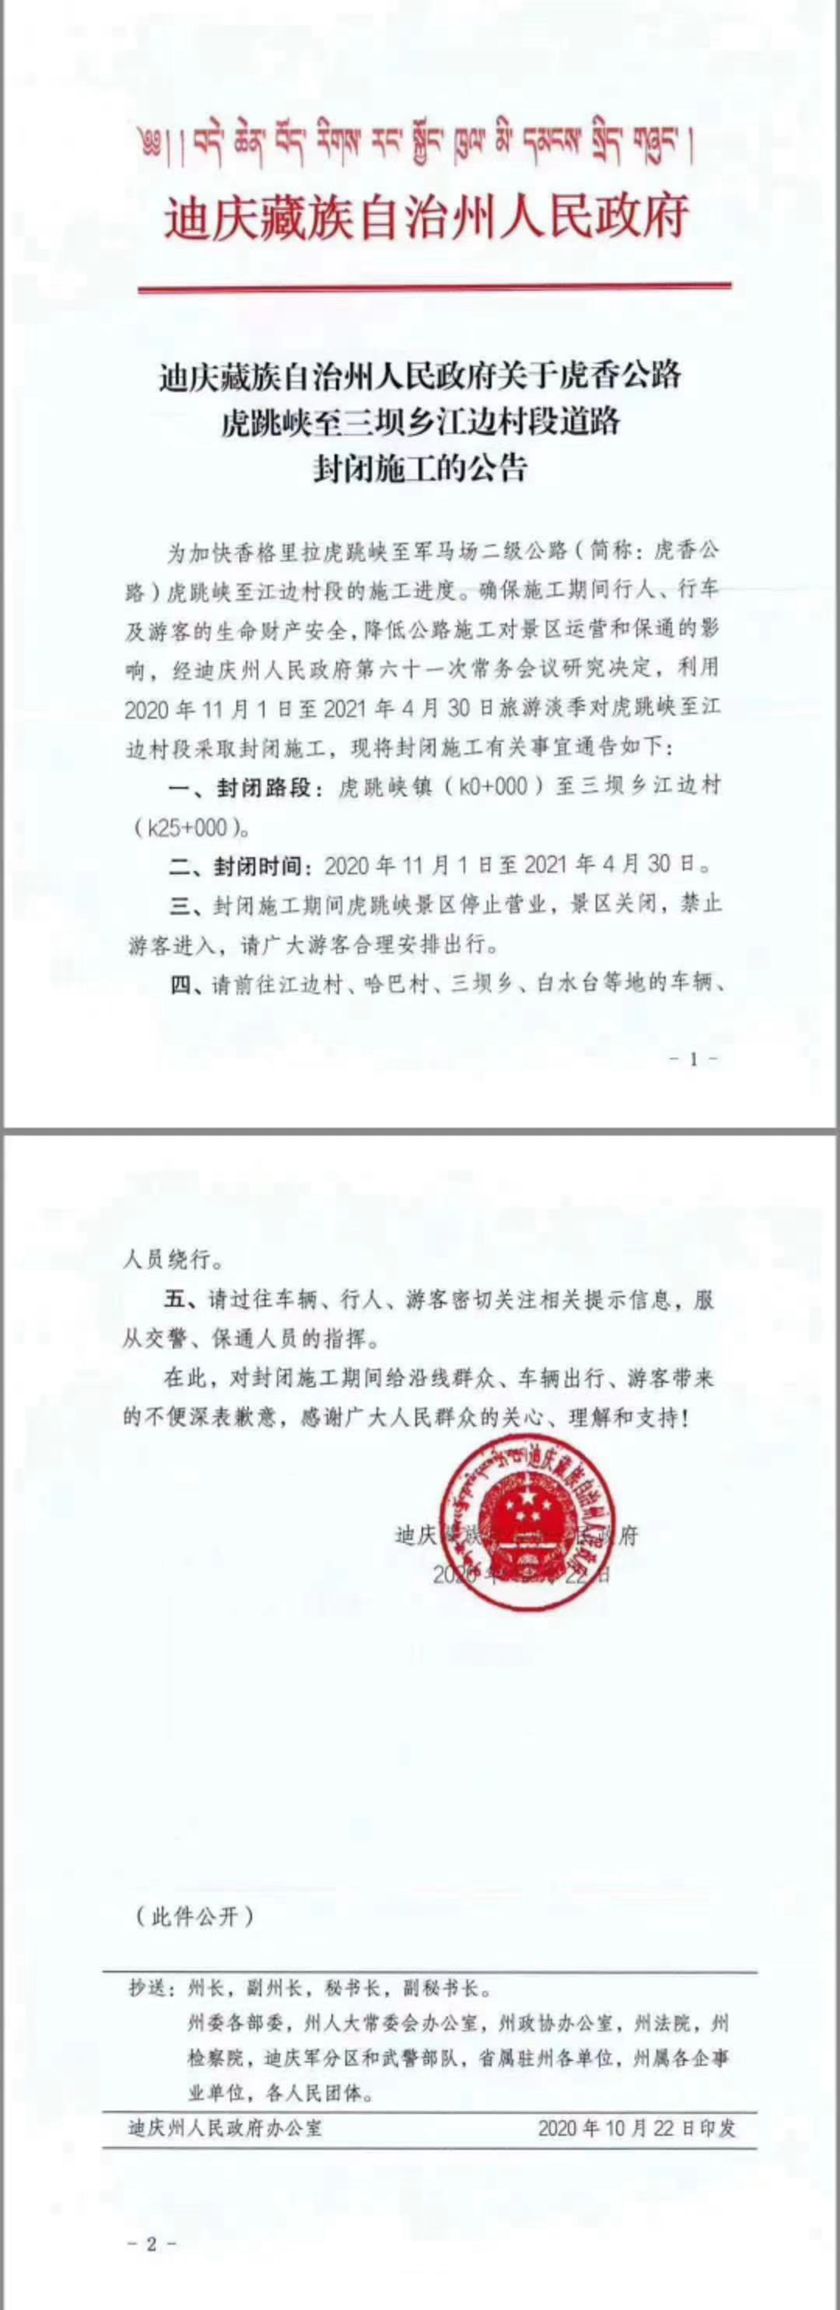 Official Notice from Diqing Tibetan Autonomous Prefecture